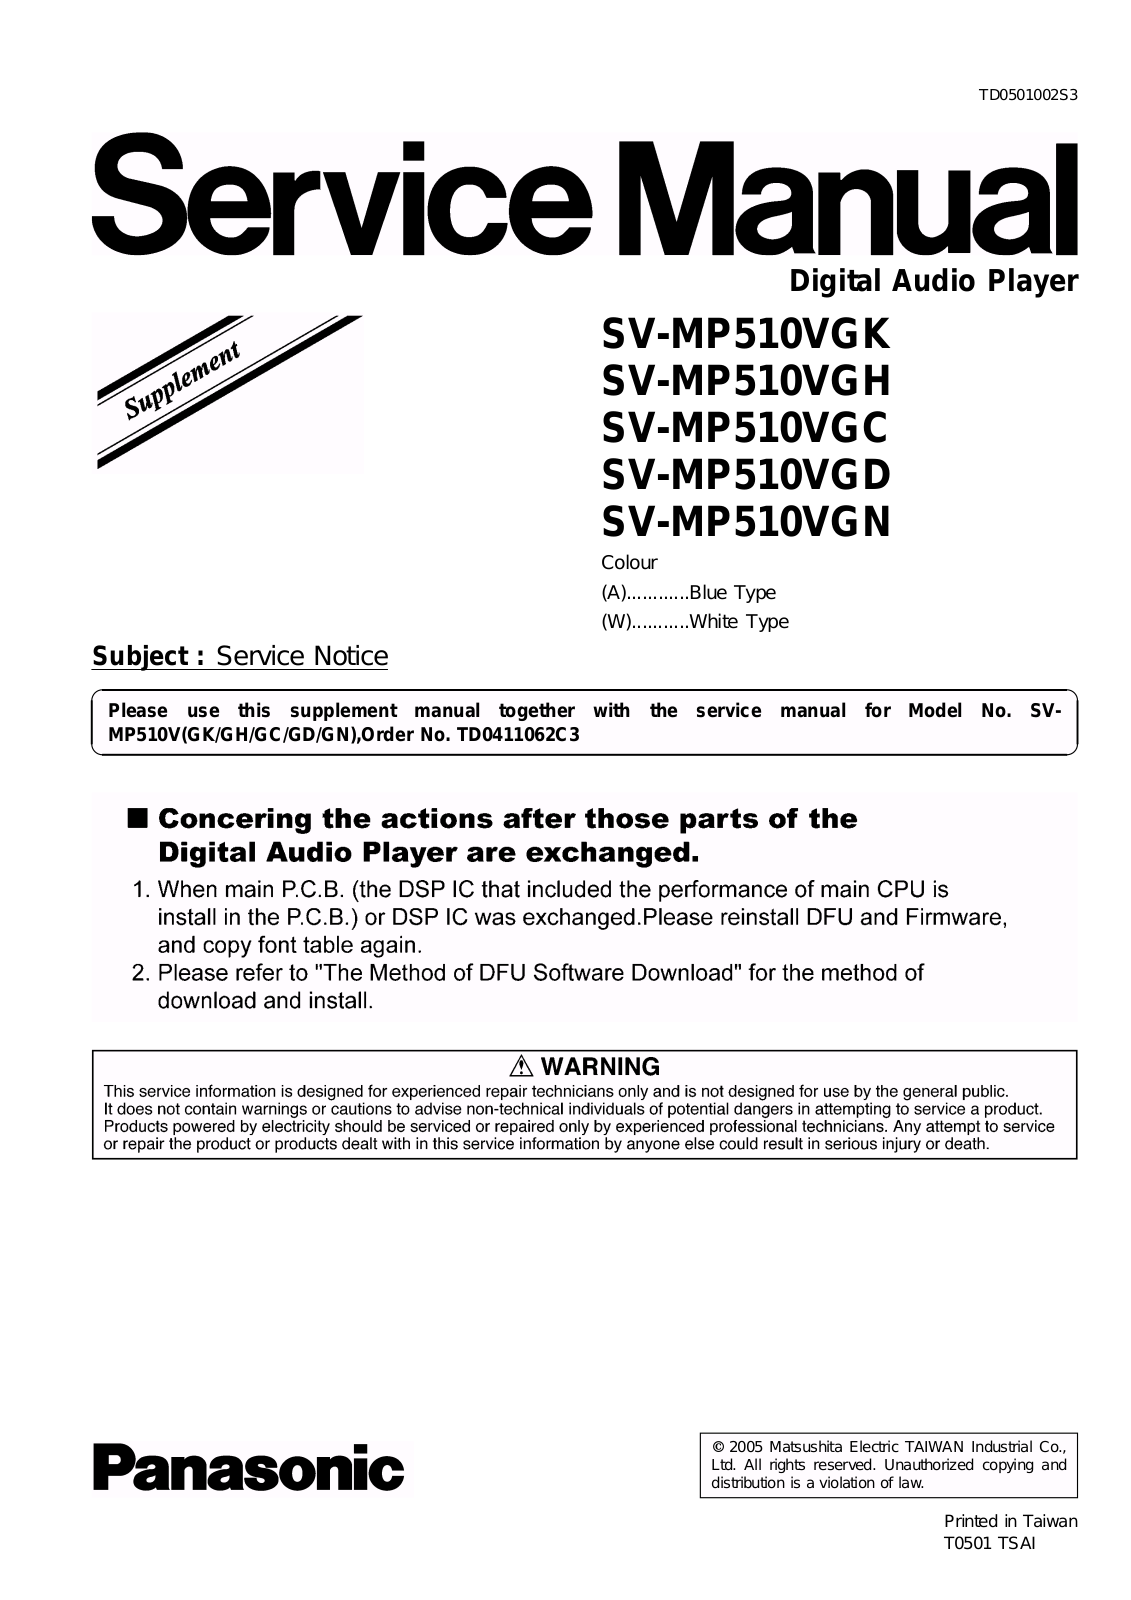 PANASONIC SV-MP510VGK, SV-MP510VGH, SV-MP510VGC, SV-MP510VGD, SV-MP510VGN Service Manual